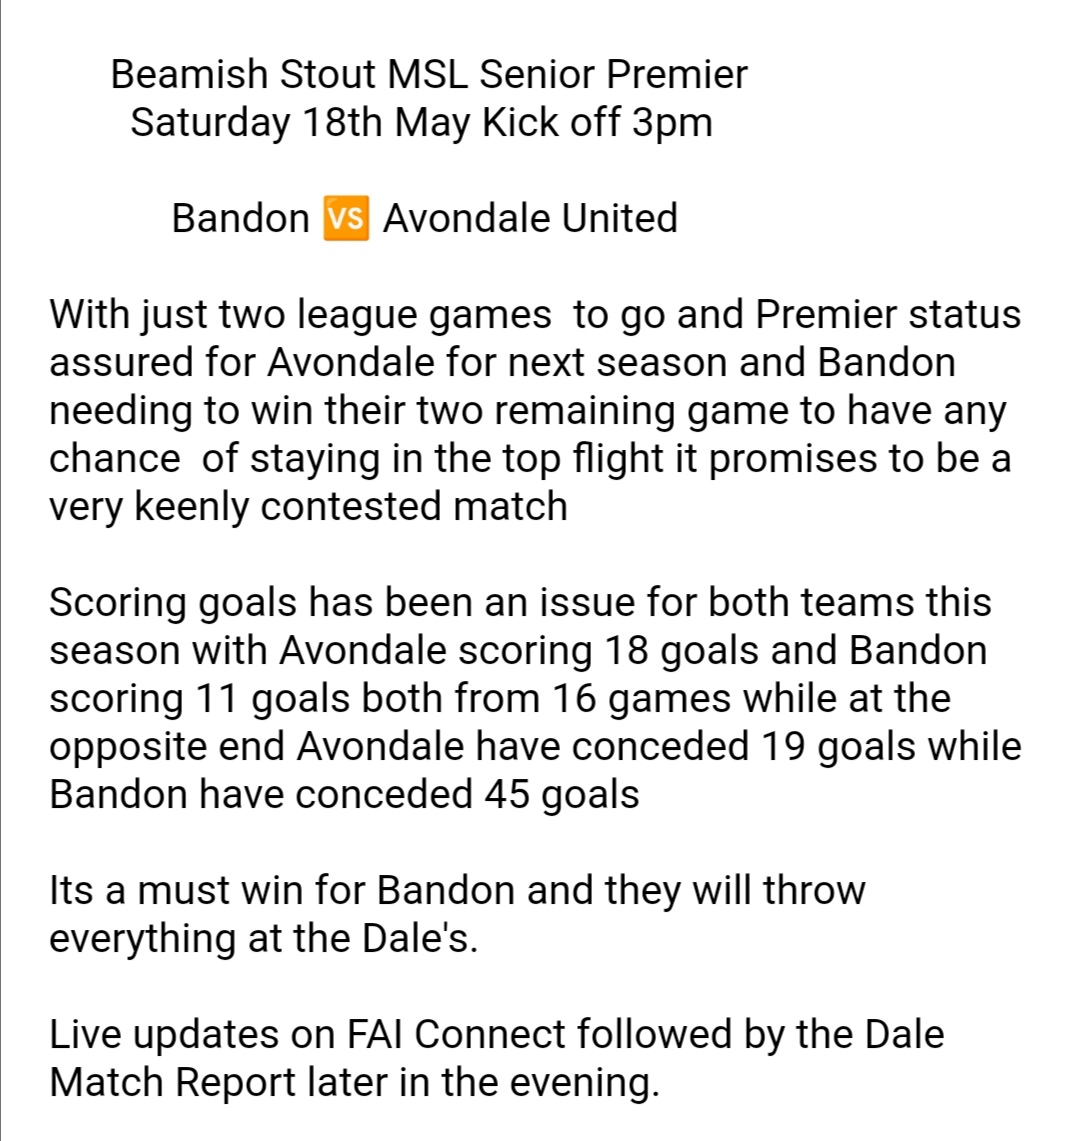 Saturday's MSL Senior Premier Division Kick off 3Pm @BandonAFC @AvondaleUtdFC @BigRedBench